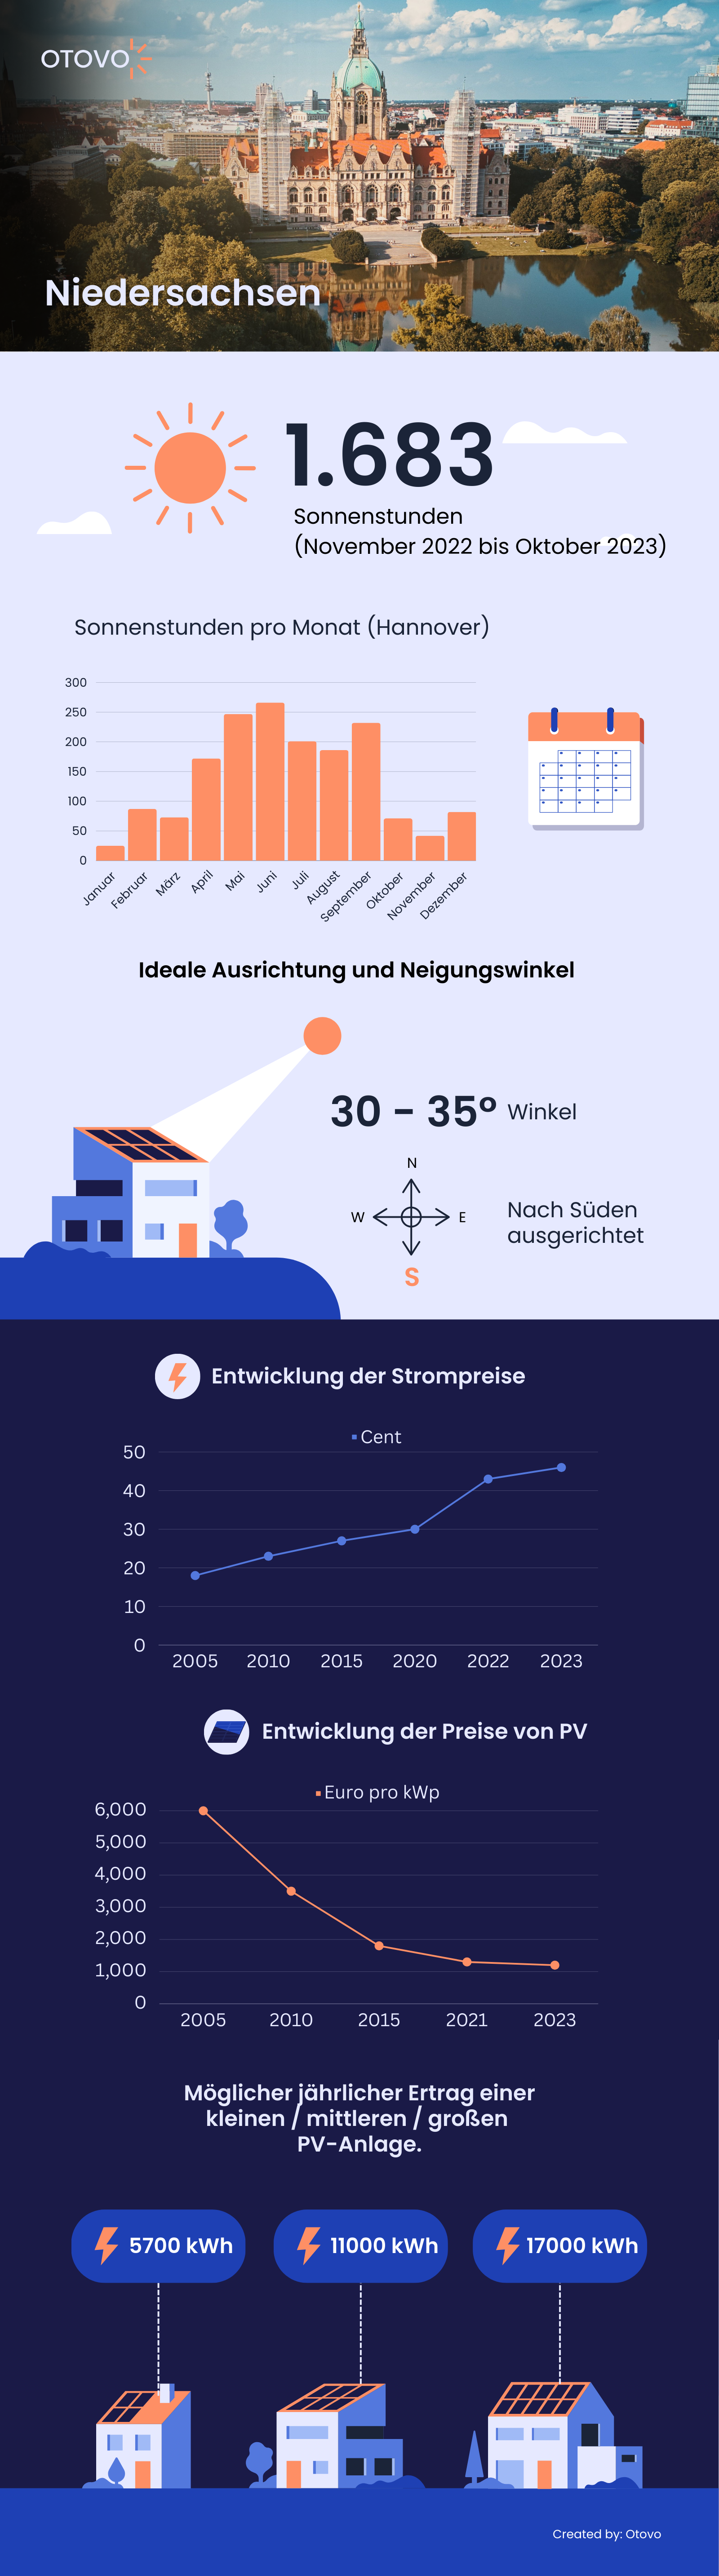 Infografik zu Solaranlagen in Niedersachsen